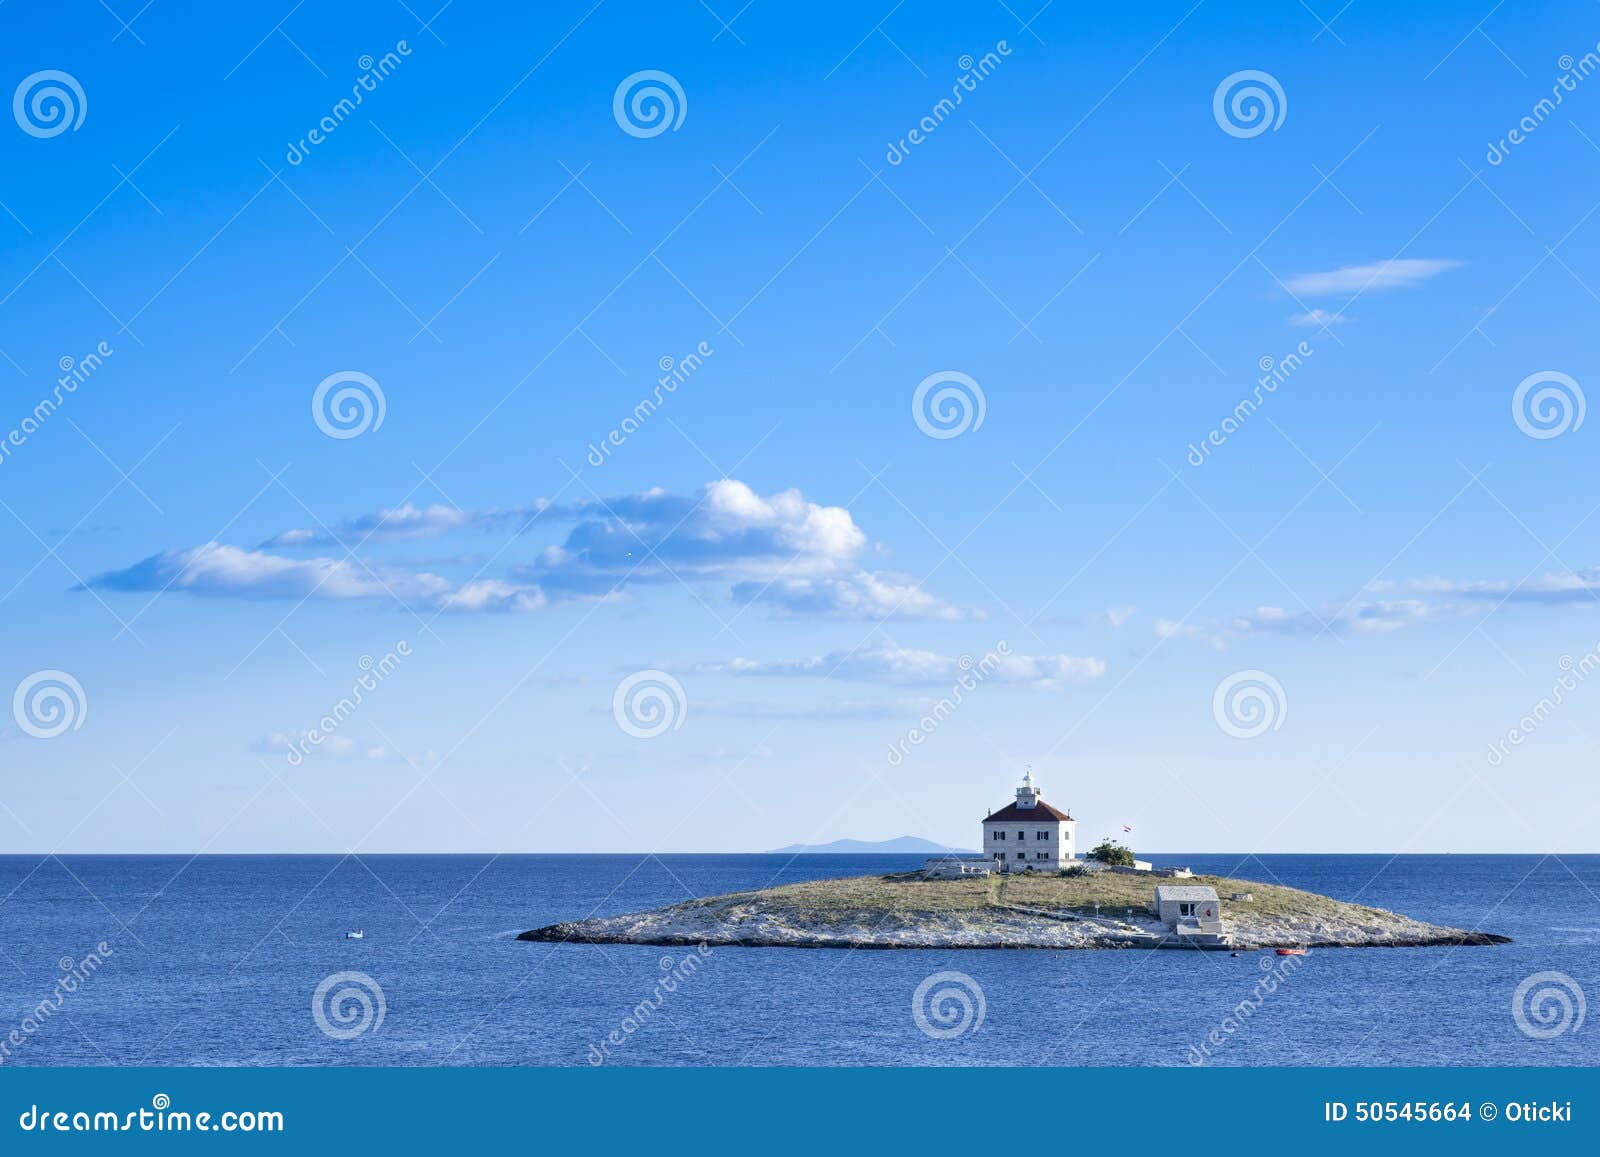 a lone island in the sea. locaten in croatia near island of hvar